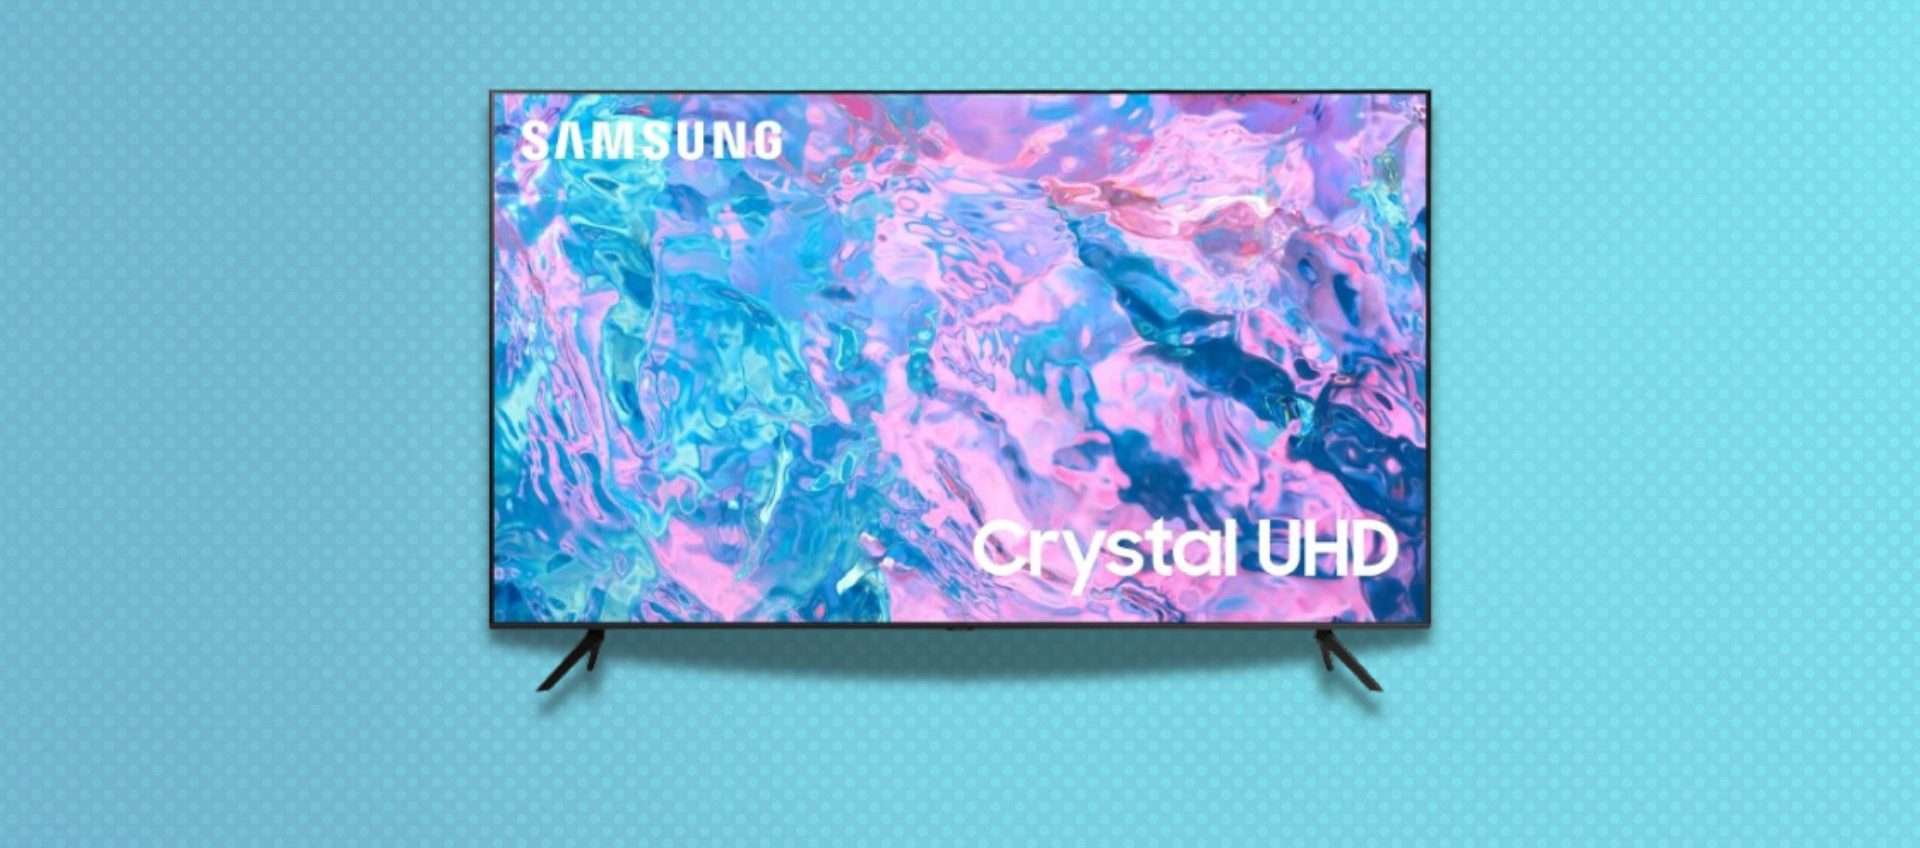 Smart TV Samsung UHD 4K da 43